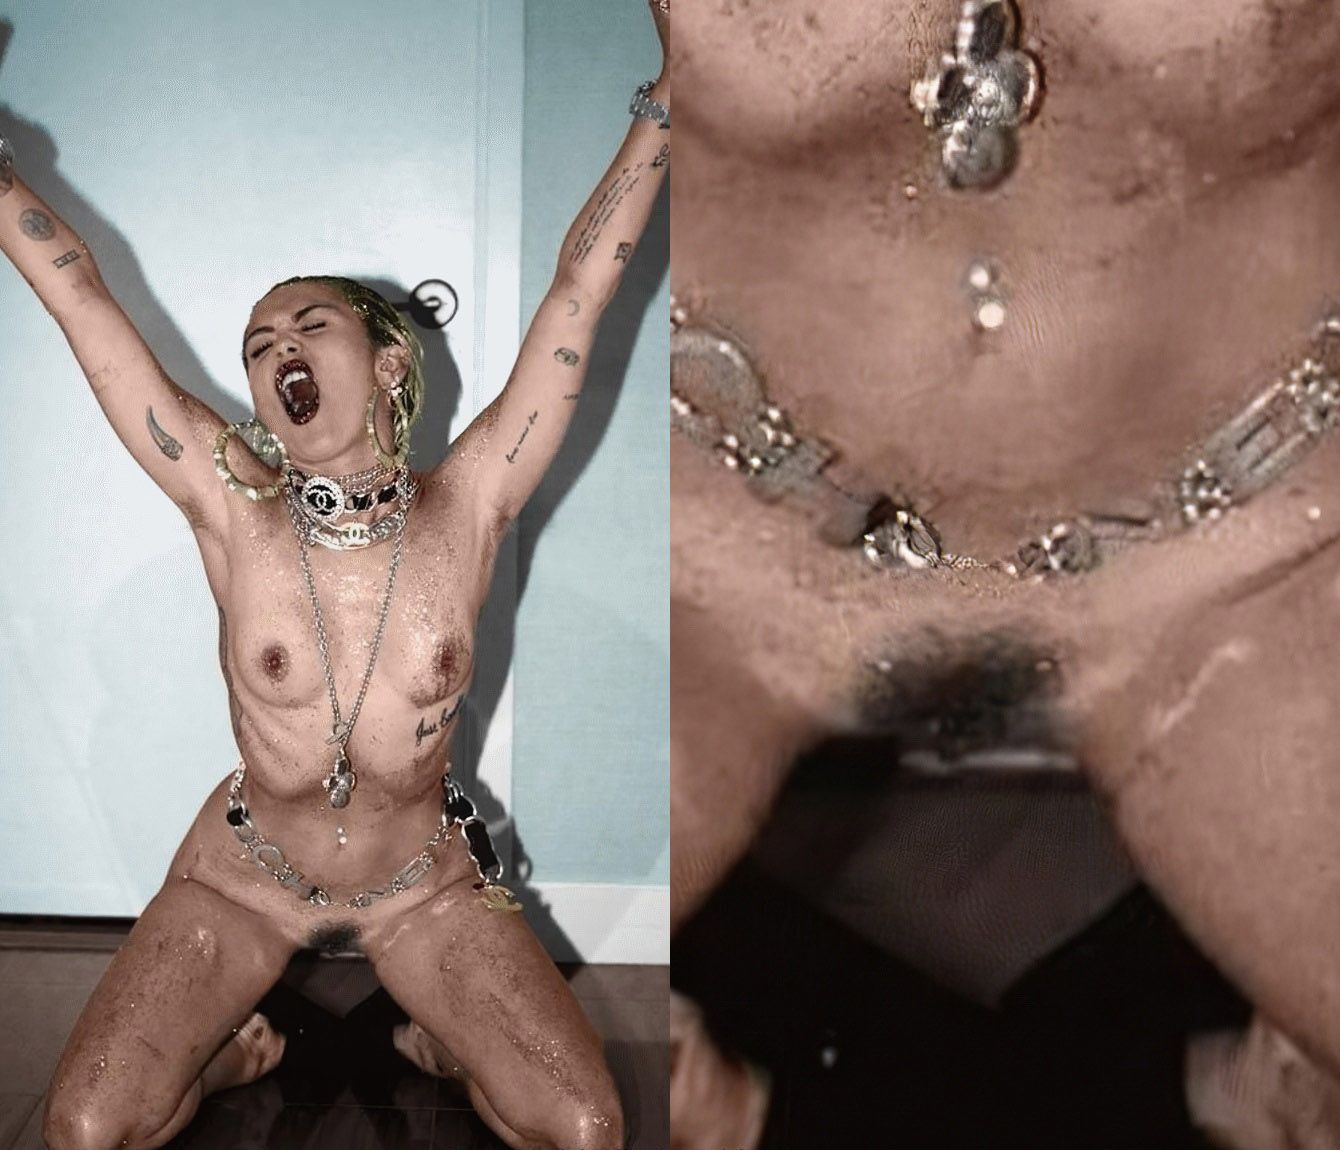 Miley cyrus nude forum